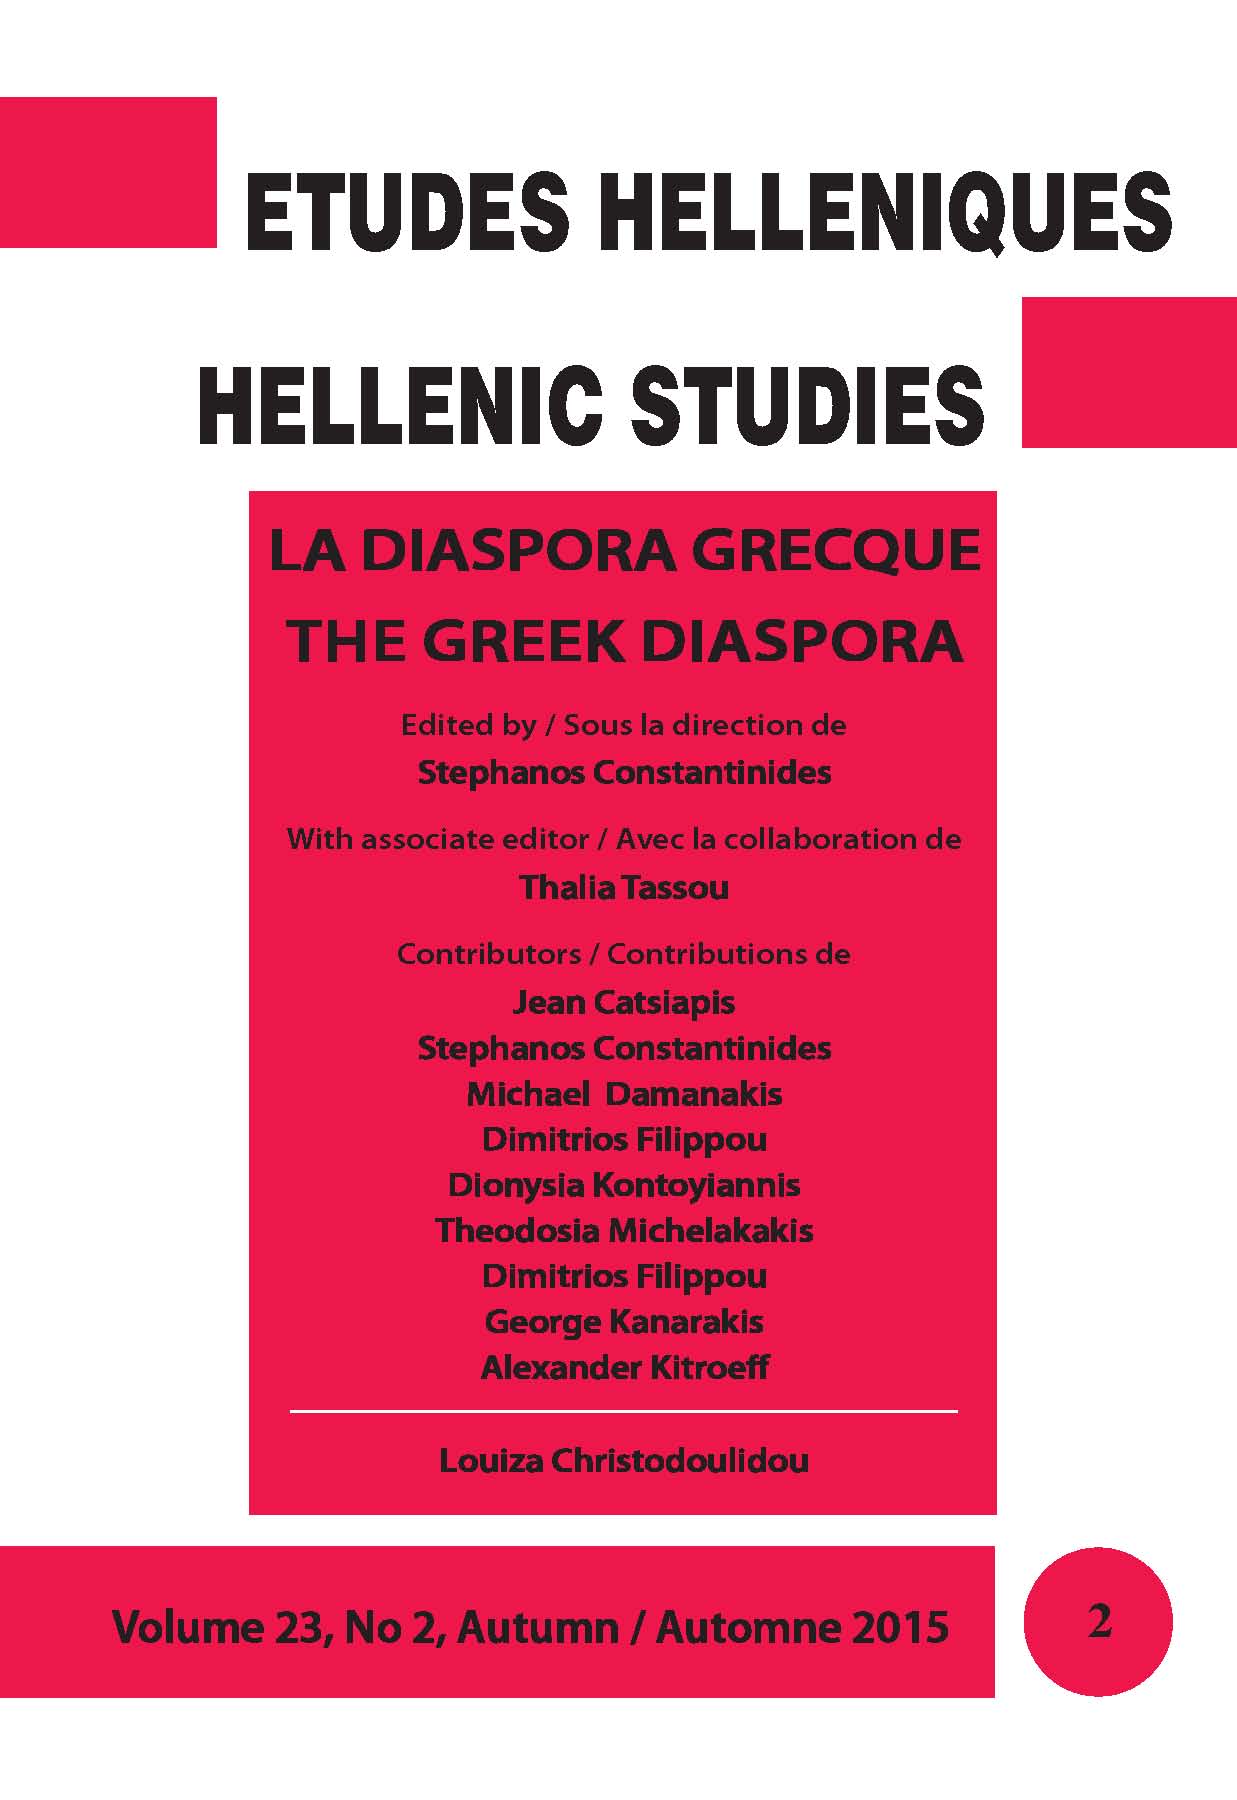 Études helléniques / Hellenic Studies, Volume 23, No 2, Autumn / Automne 2015, LA DIASPORA GRECQUE / THE GREEK DIASPORA